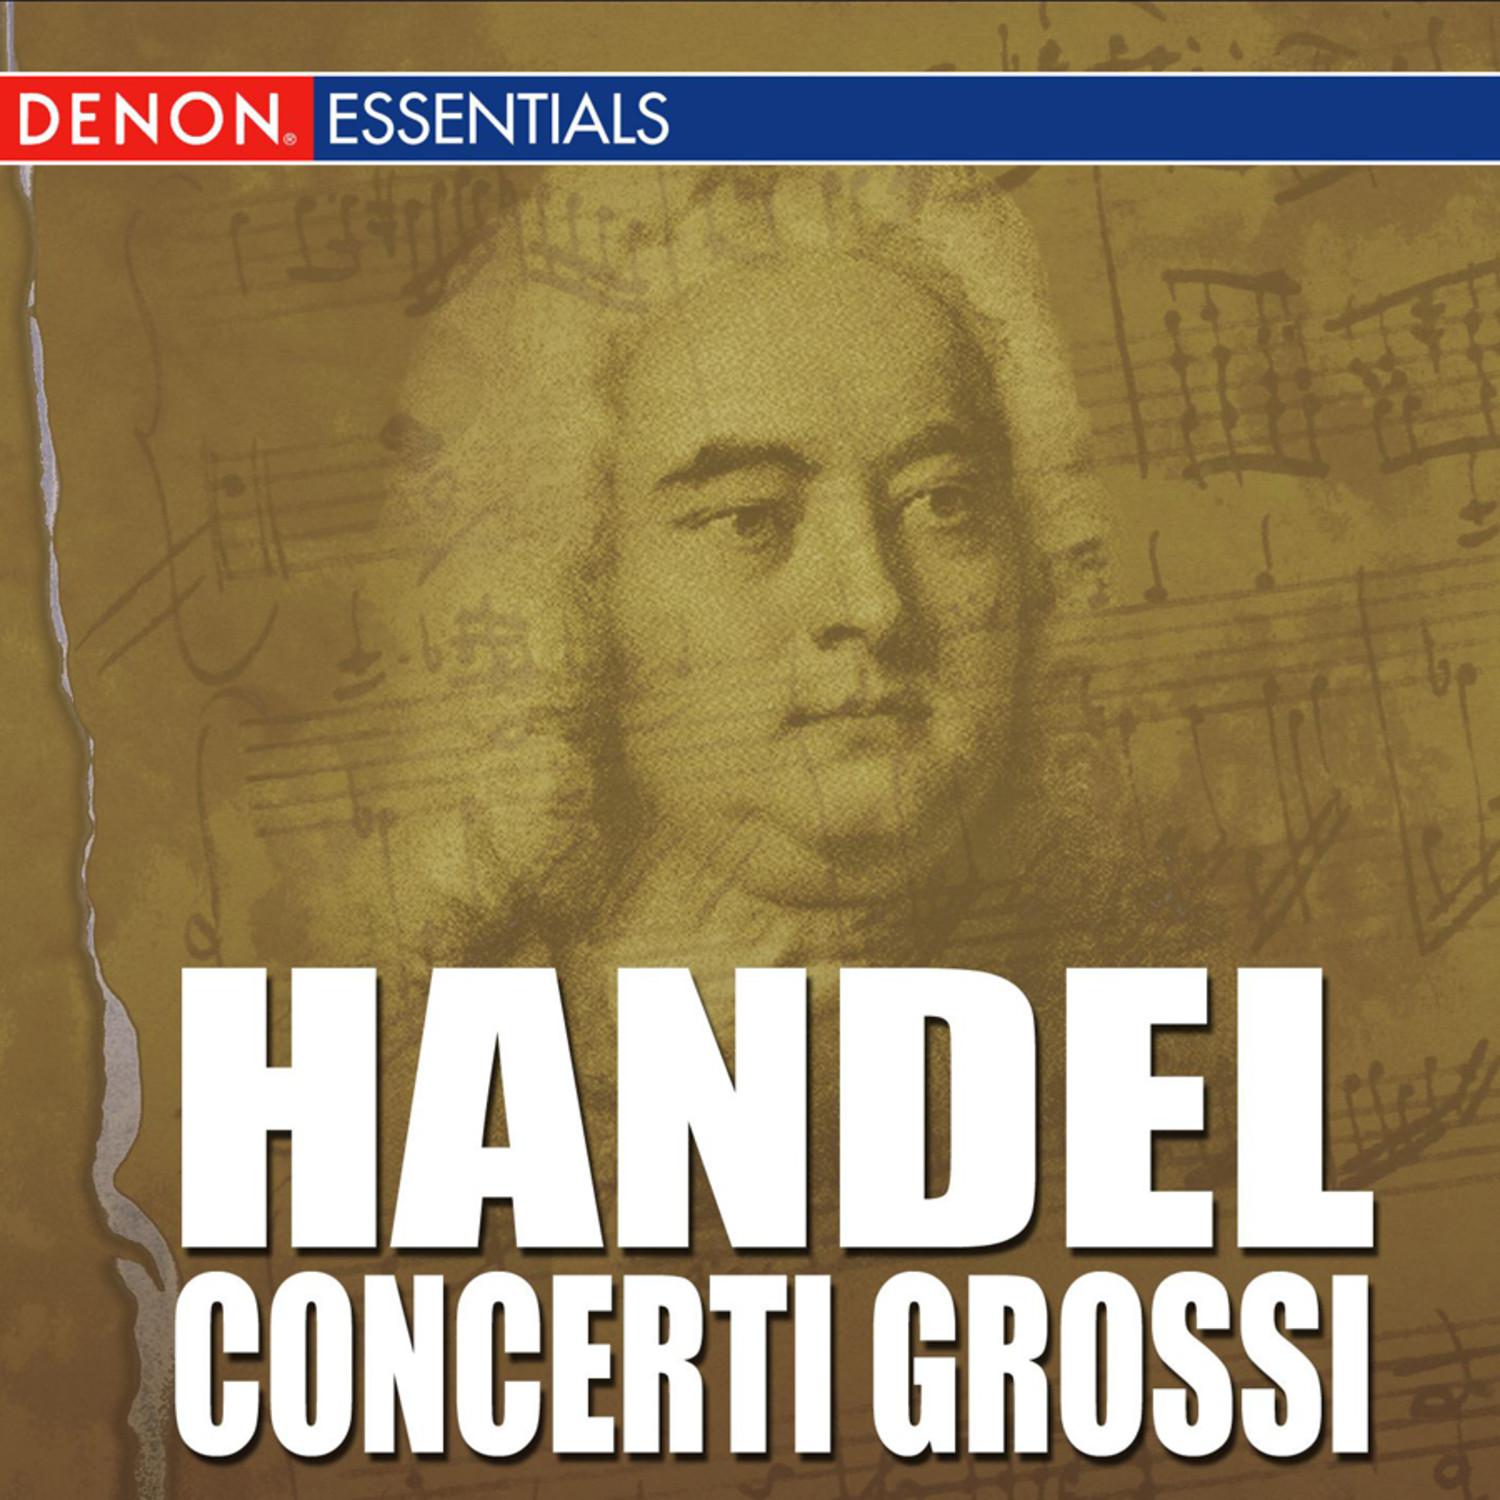 Concerto Grosso, Op. 6: No. 10 in D Minor, HWV 328: II. Allegro